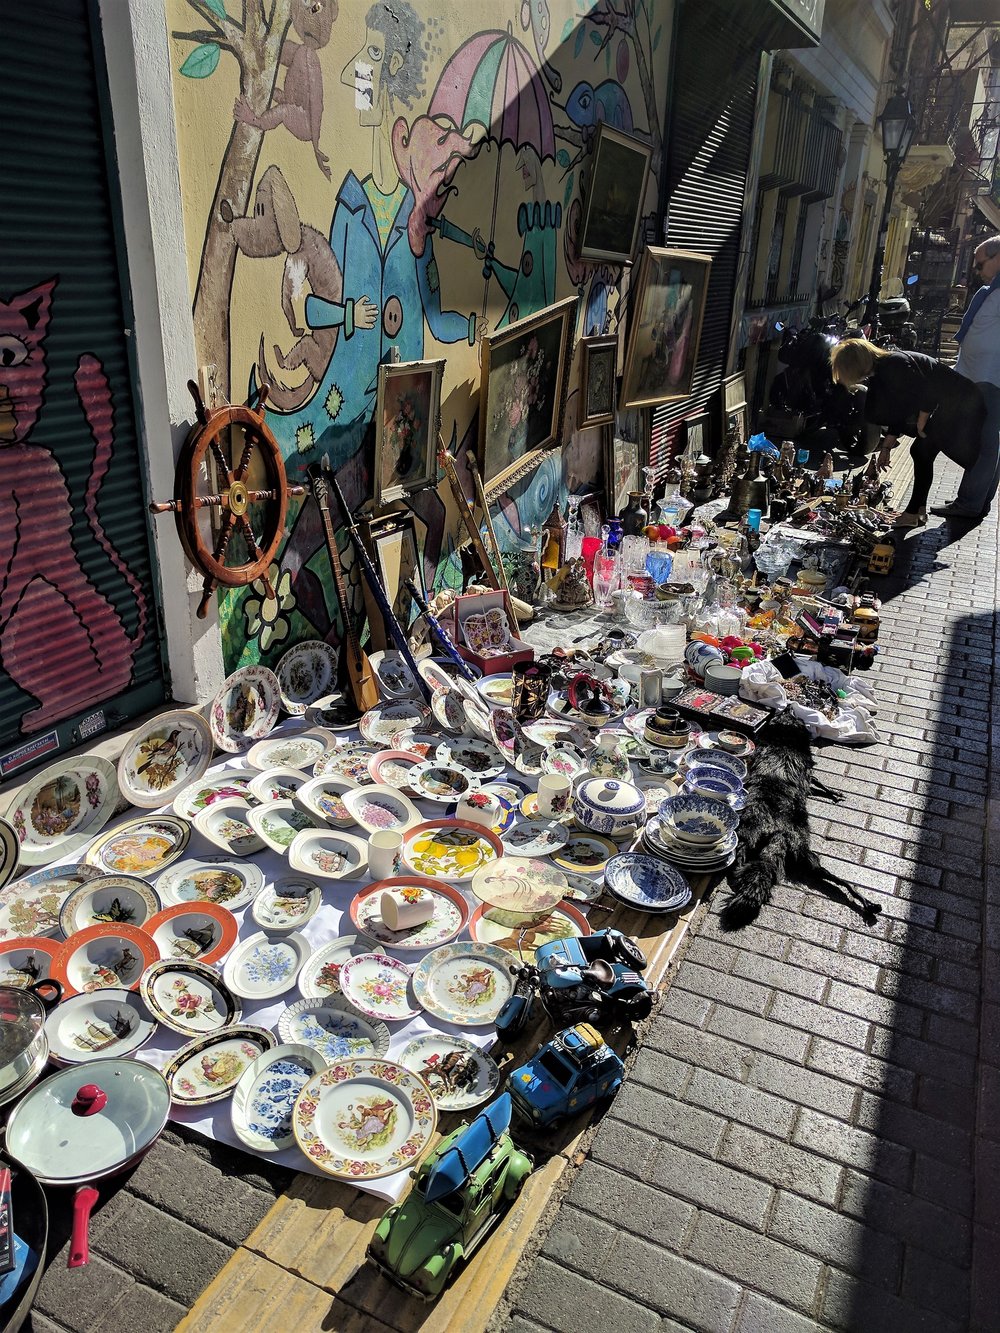 Ιδανικη βολτα στην αγορα του Μοναστηρακιου μια ηλιολουστη μερα